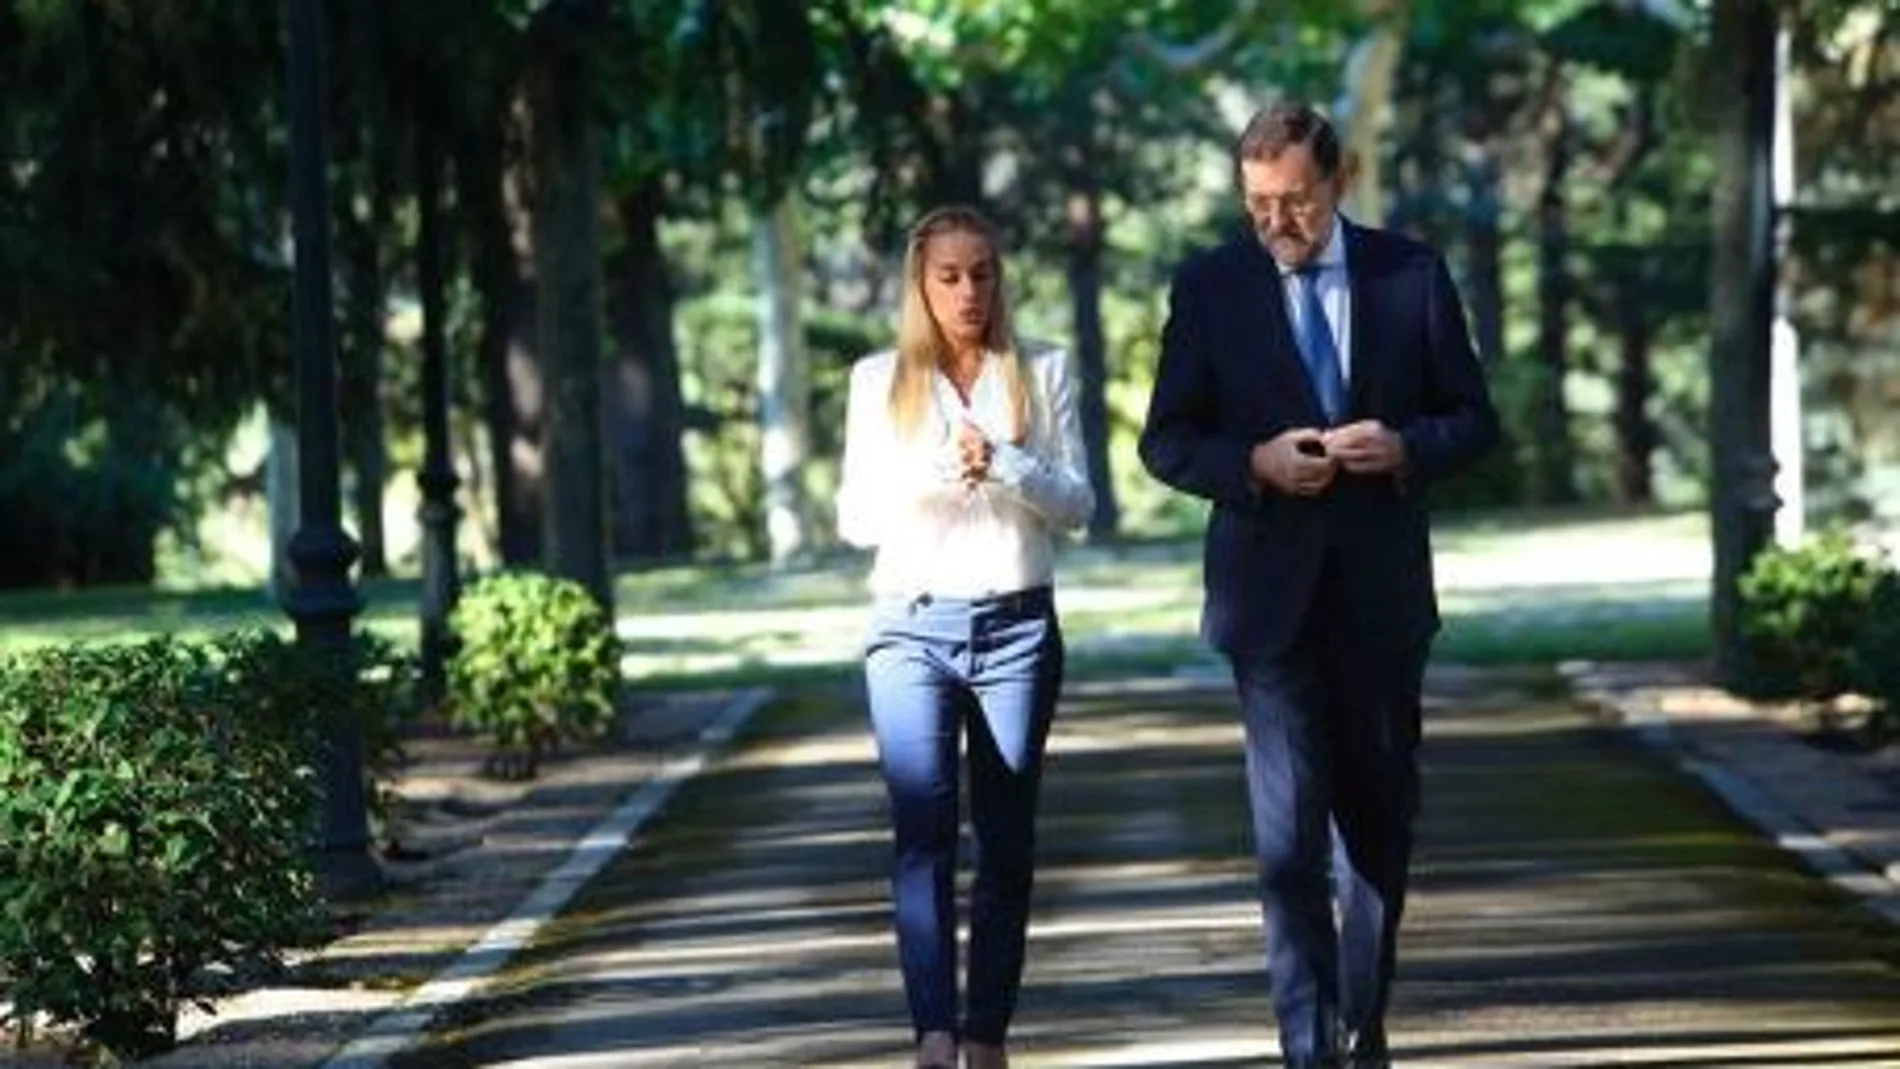 Imagen de Rajoy con Lilian Tintori durante su encuentro en favor de la liberación del esposo de ella, el líder opositor Leopoldo López